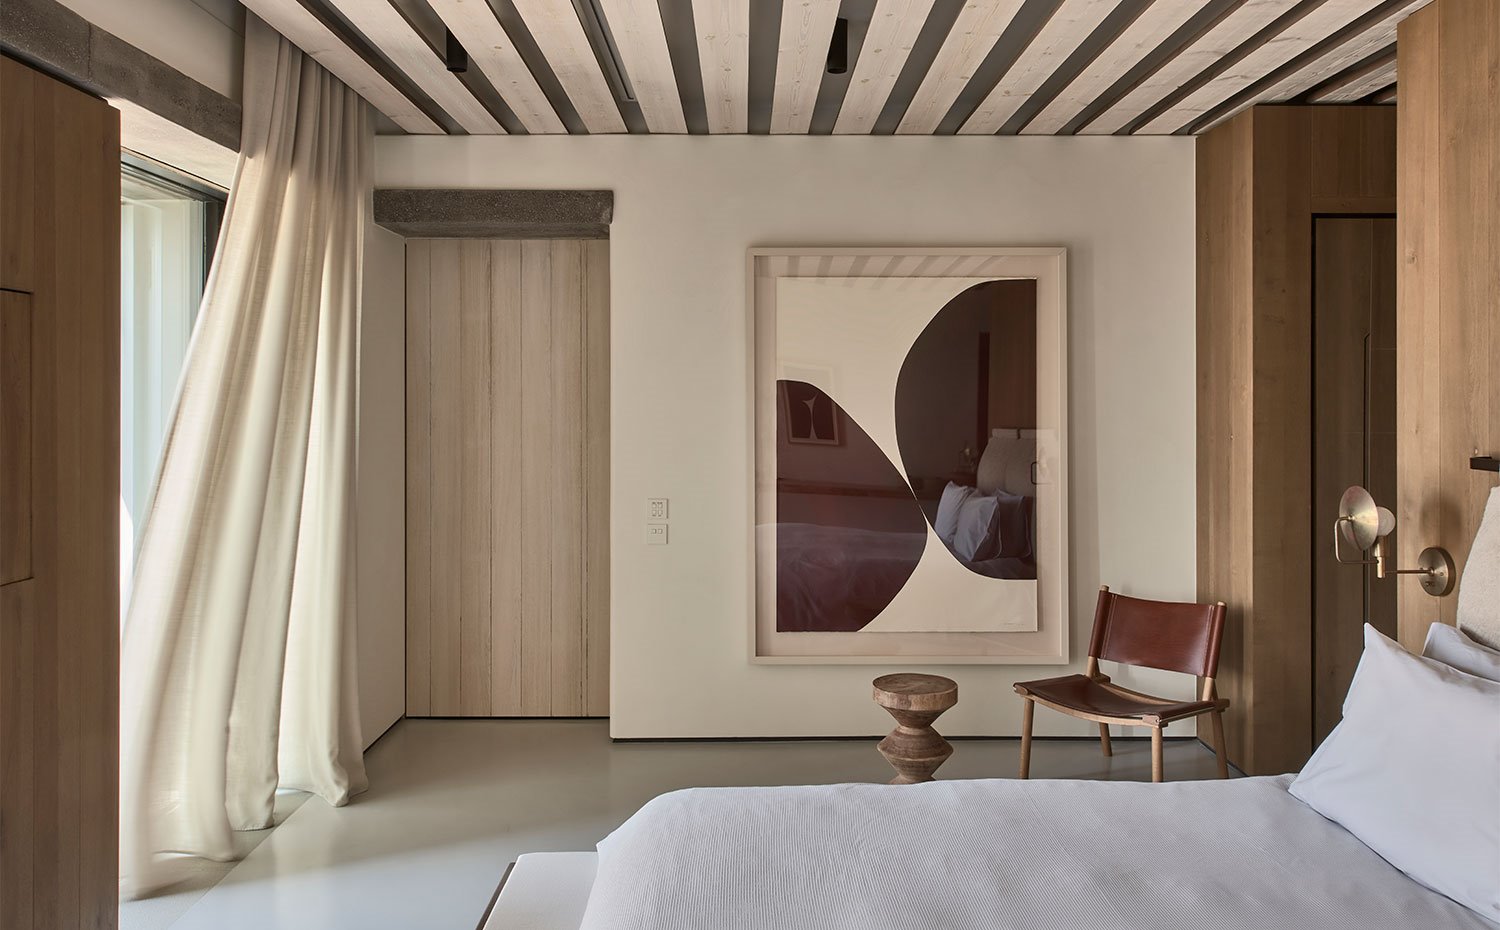 Cortisas de lino en los dormitorios con carpintería en acabado natural y silla con asiento y respaldo de piel